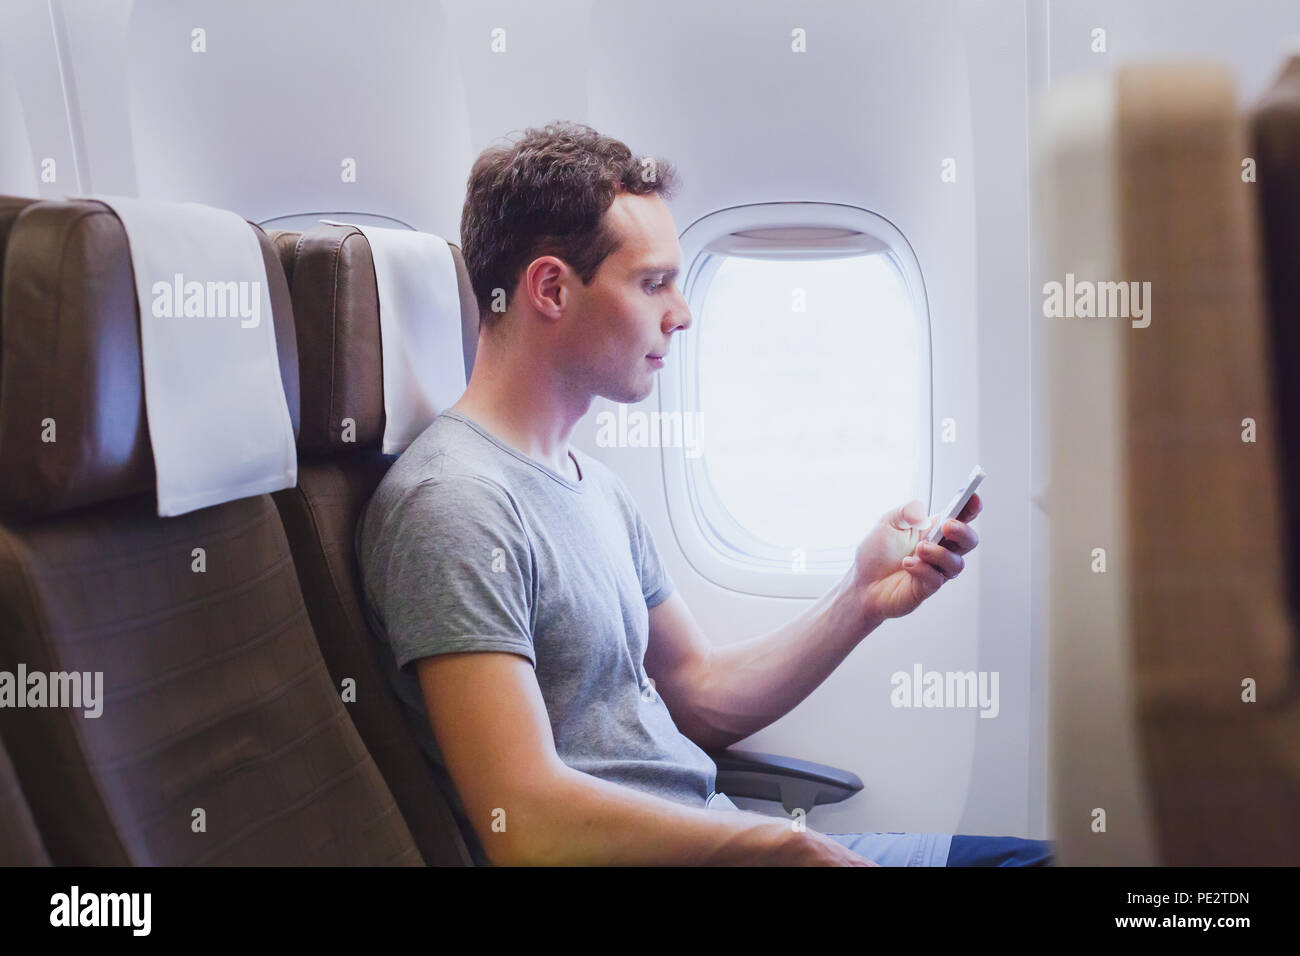 Passeggero di aereo utilizzando mobile smart phone nel piano, travel app sullo smartphone Foto Stock